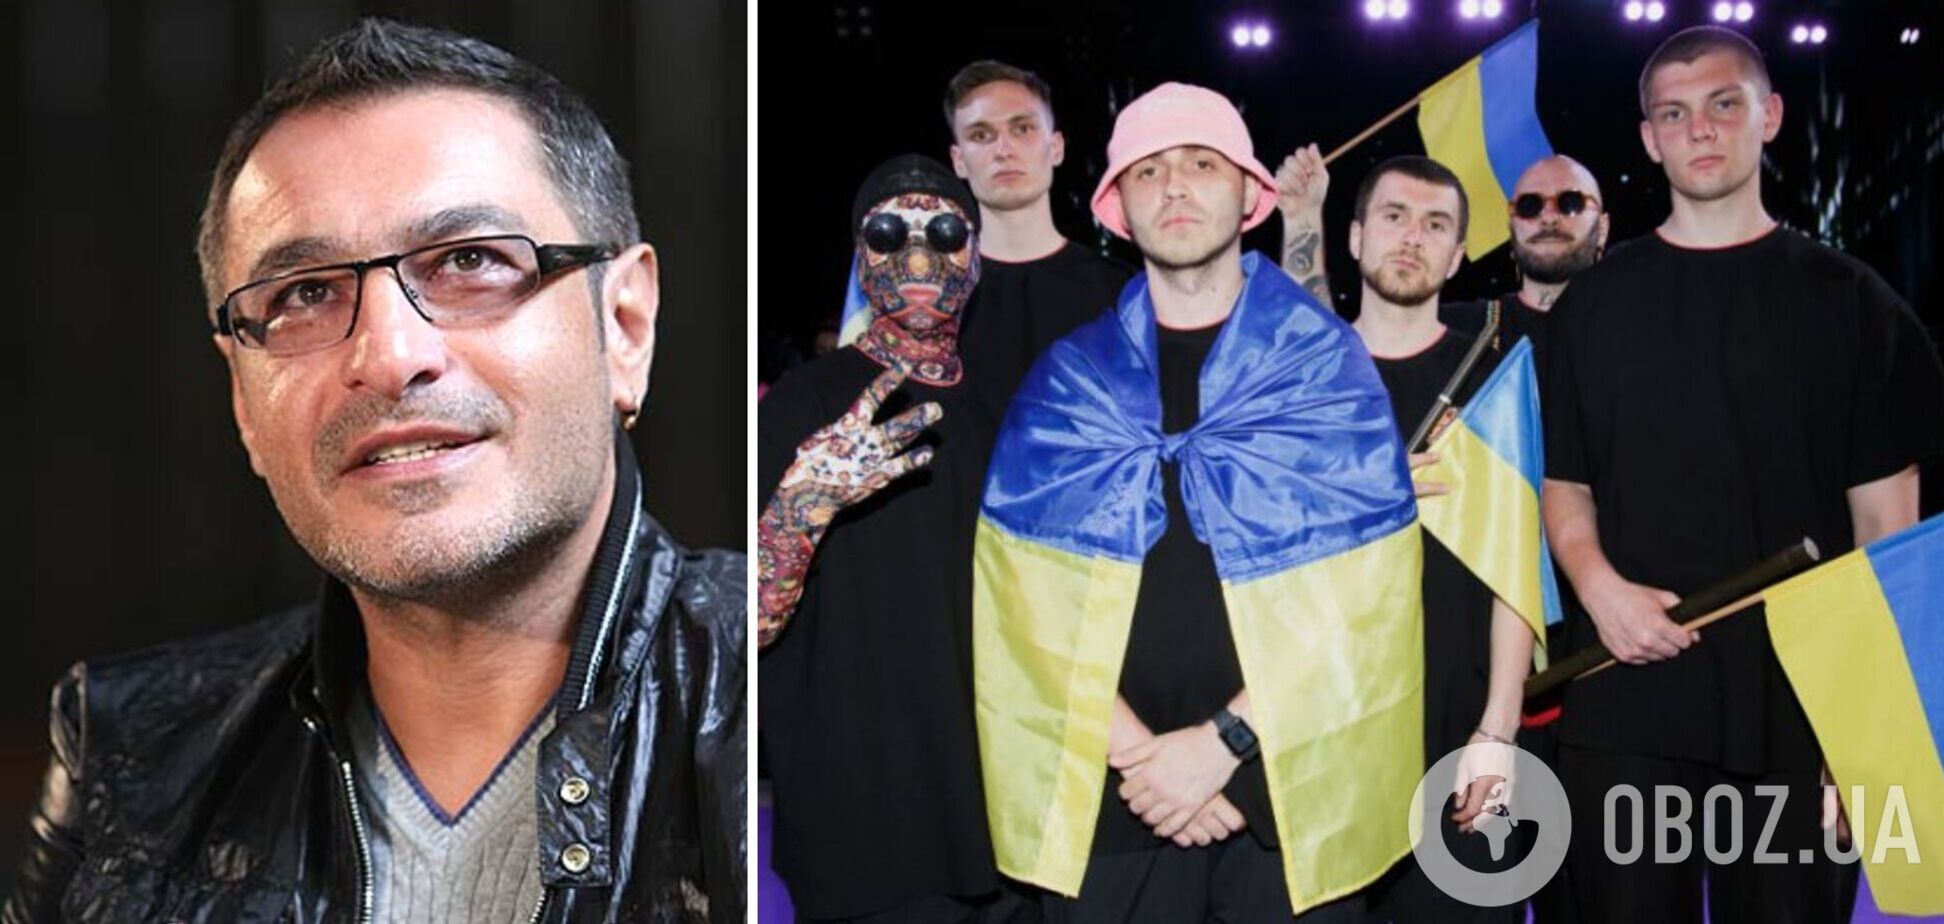 Российский музыкальный критик Гаспарян на фоне Kalush Orchestra поддержал Украину